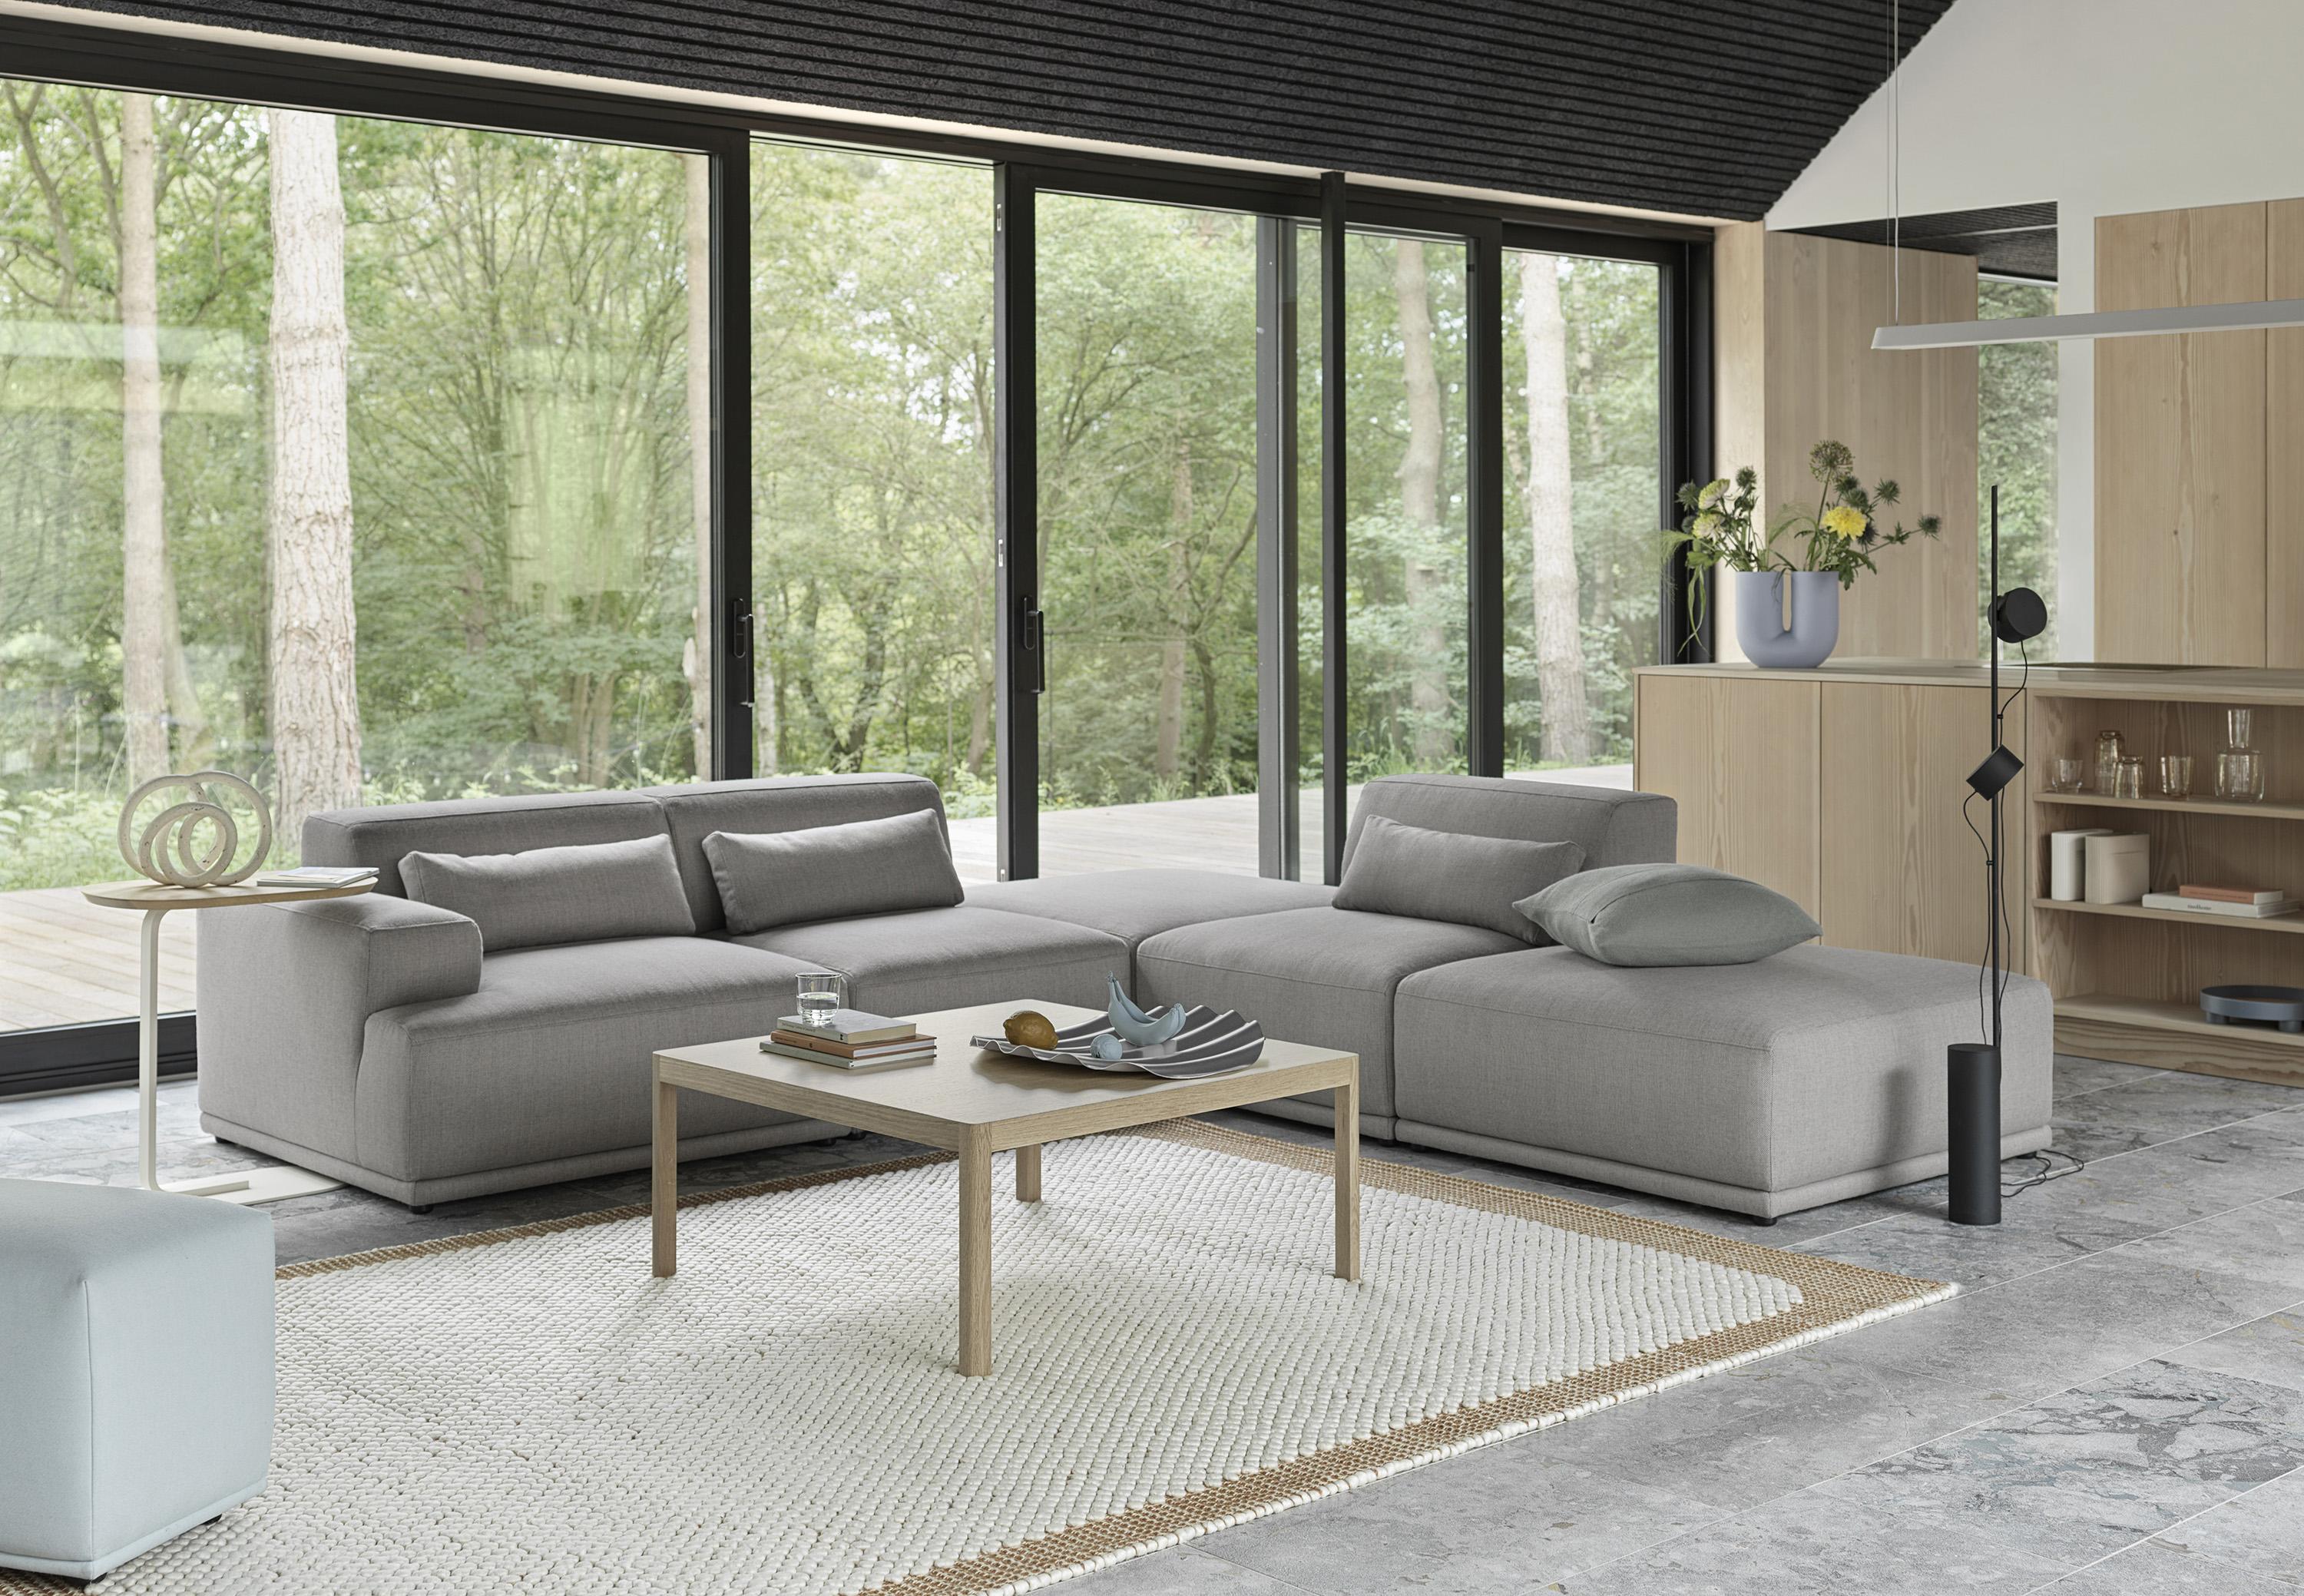 Sofas + Modular Seating Image